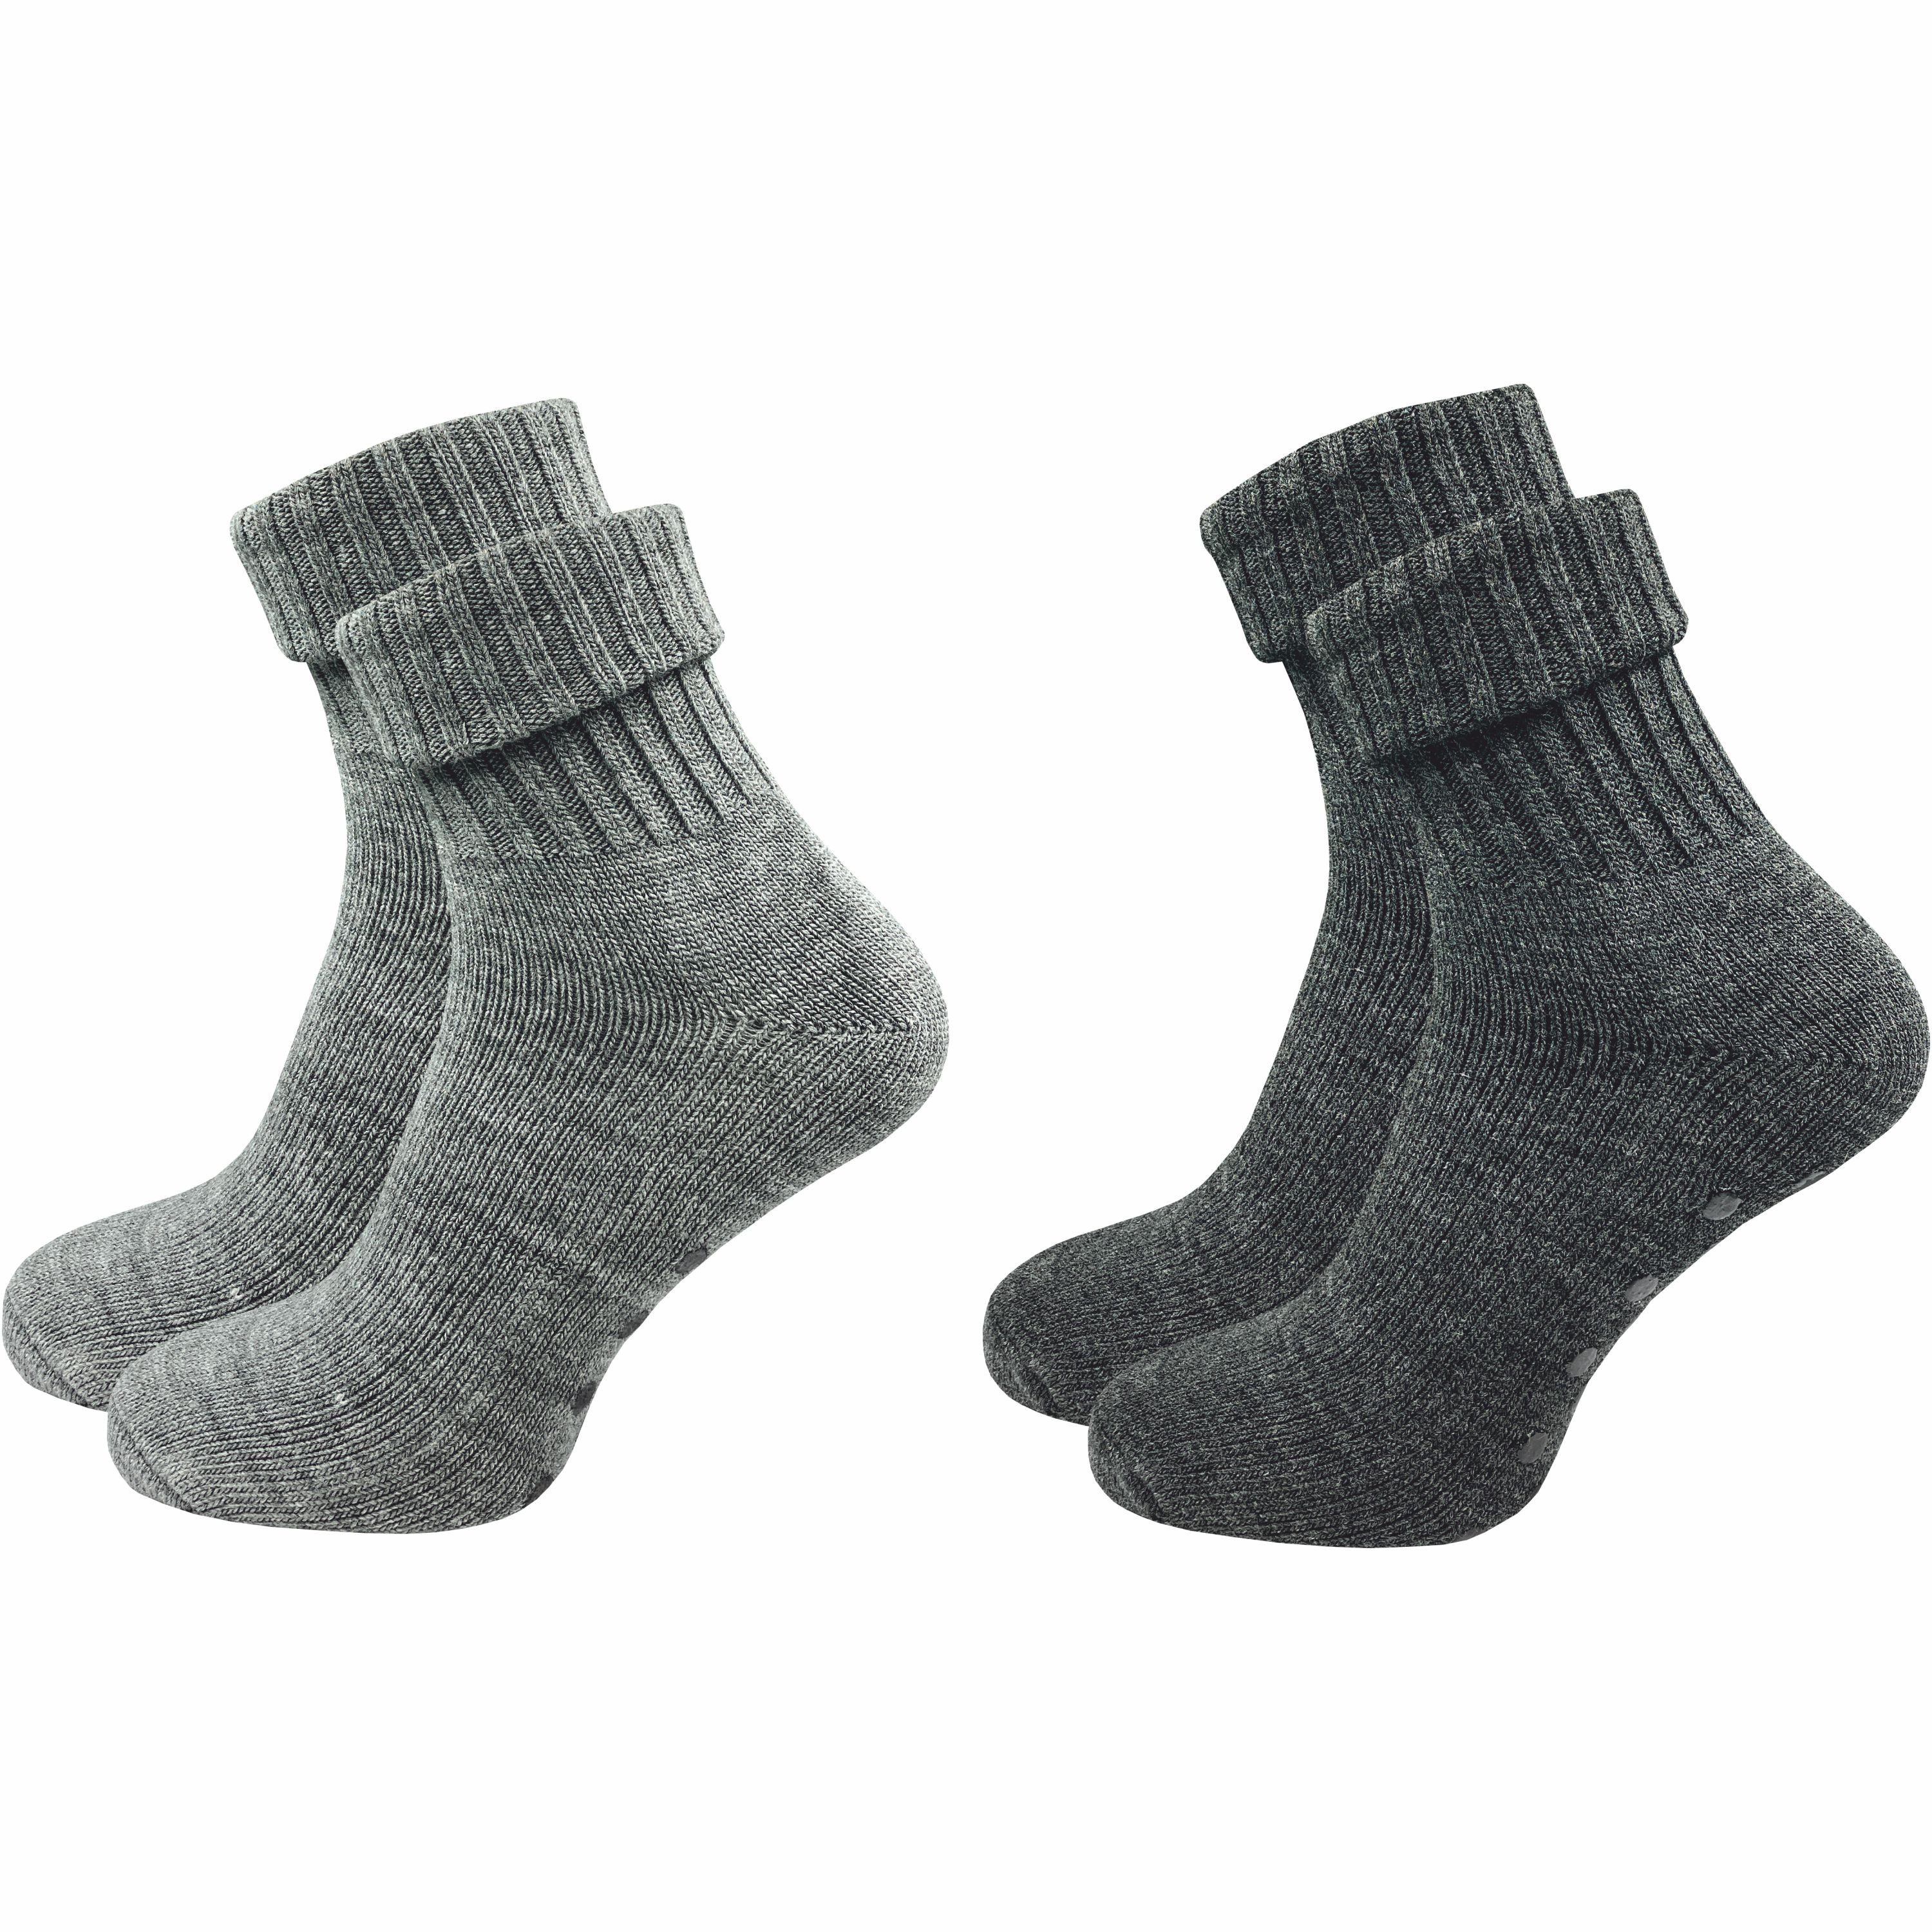 GAWILO ABS-Socken für Damen aus Wolle für extra warme Füße, Stoppersocken  (2 Paar) Rutschfeste Hausschuhsocken, Weiche & kuschlige Socken mit Noppen | Wintersocken